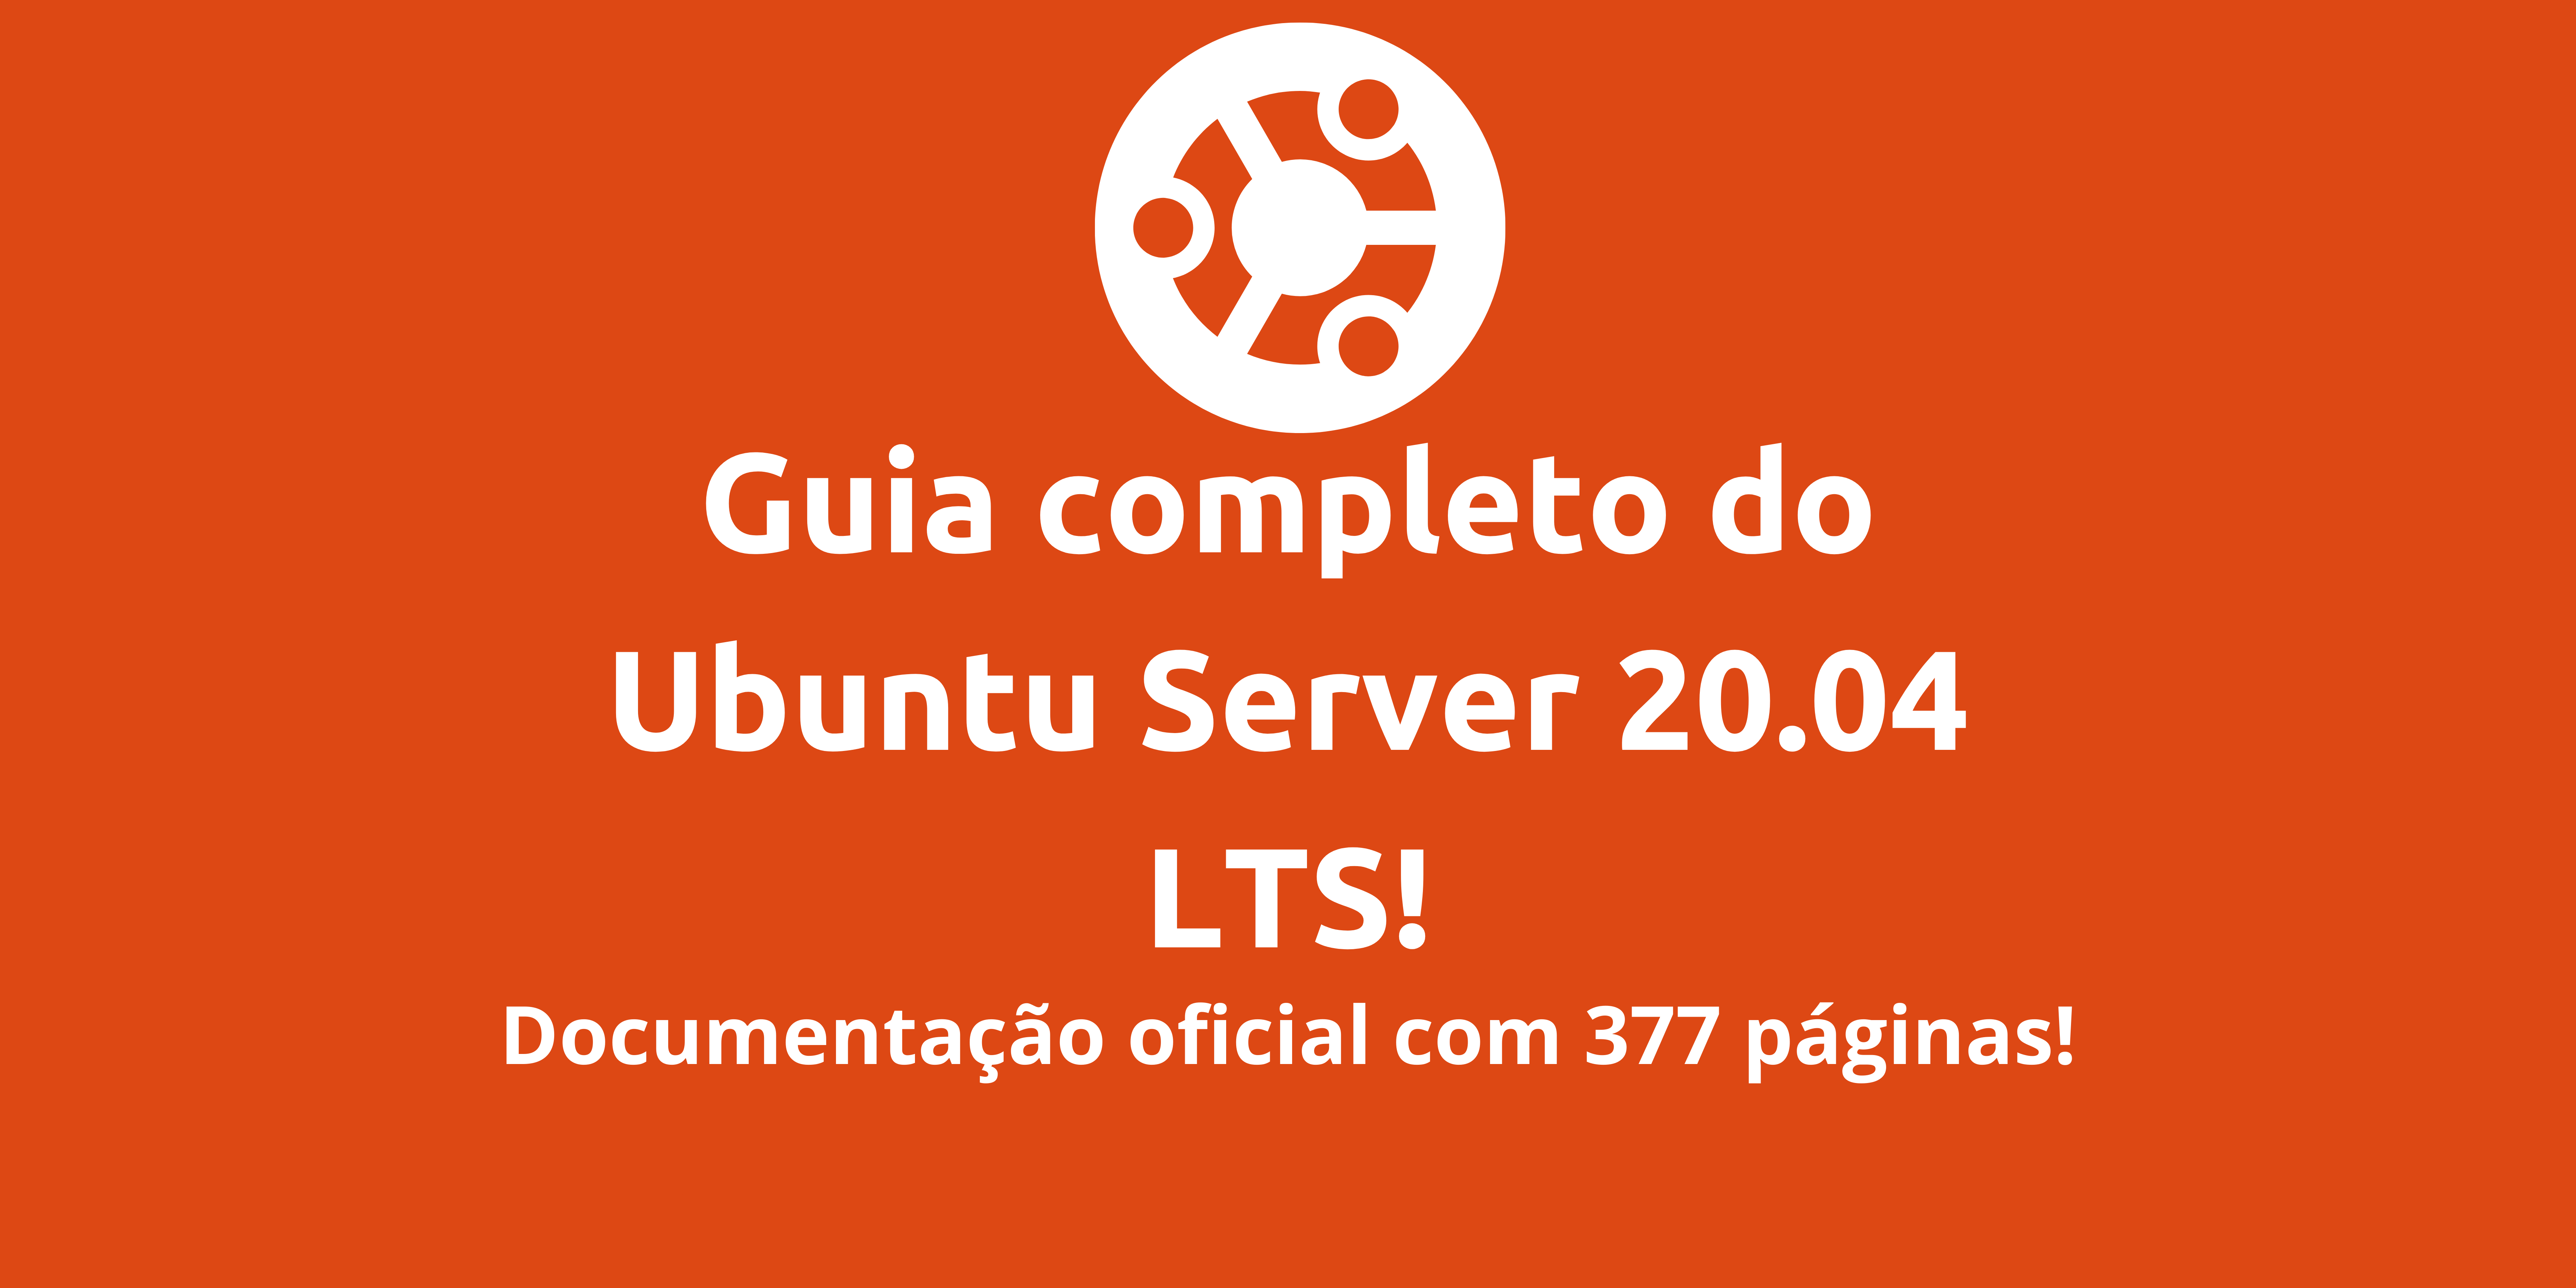 guia-para-ubuntu-server-20-04-lts-guia-completo-com-377-paginas